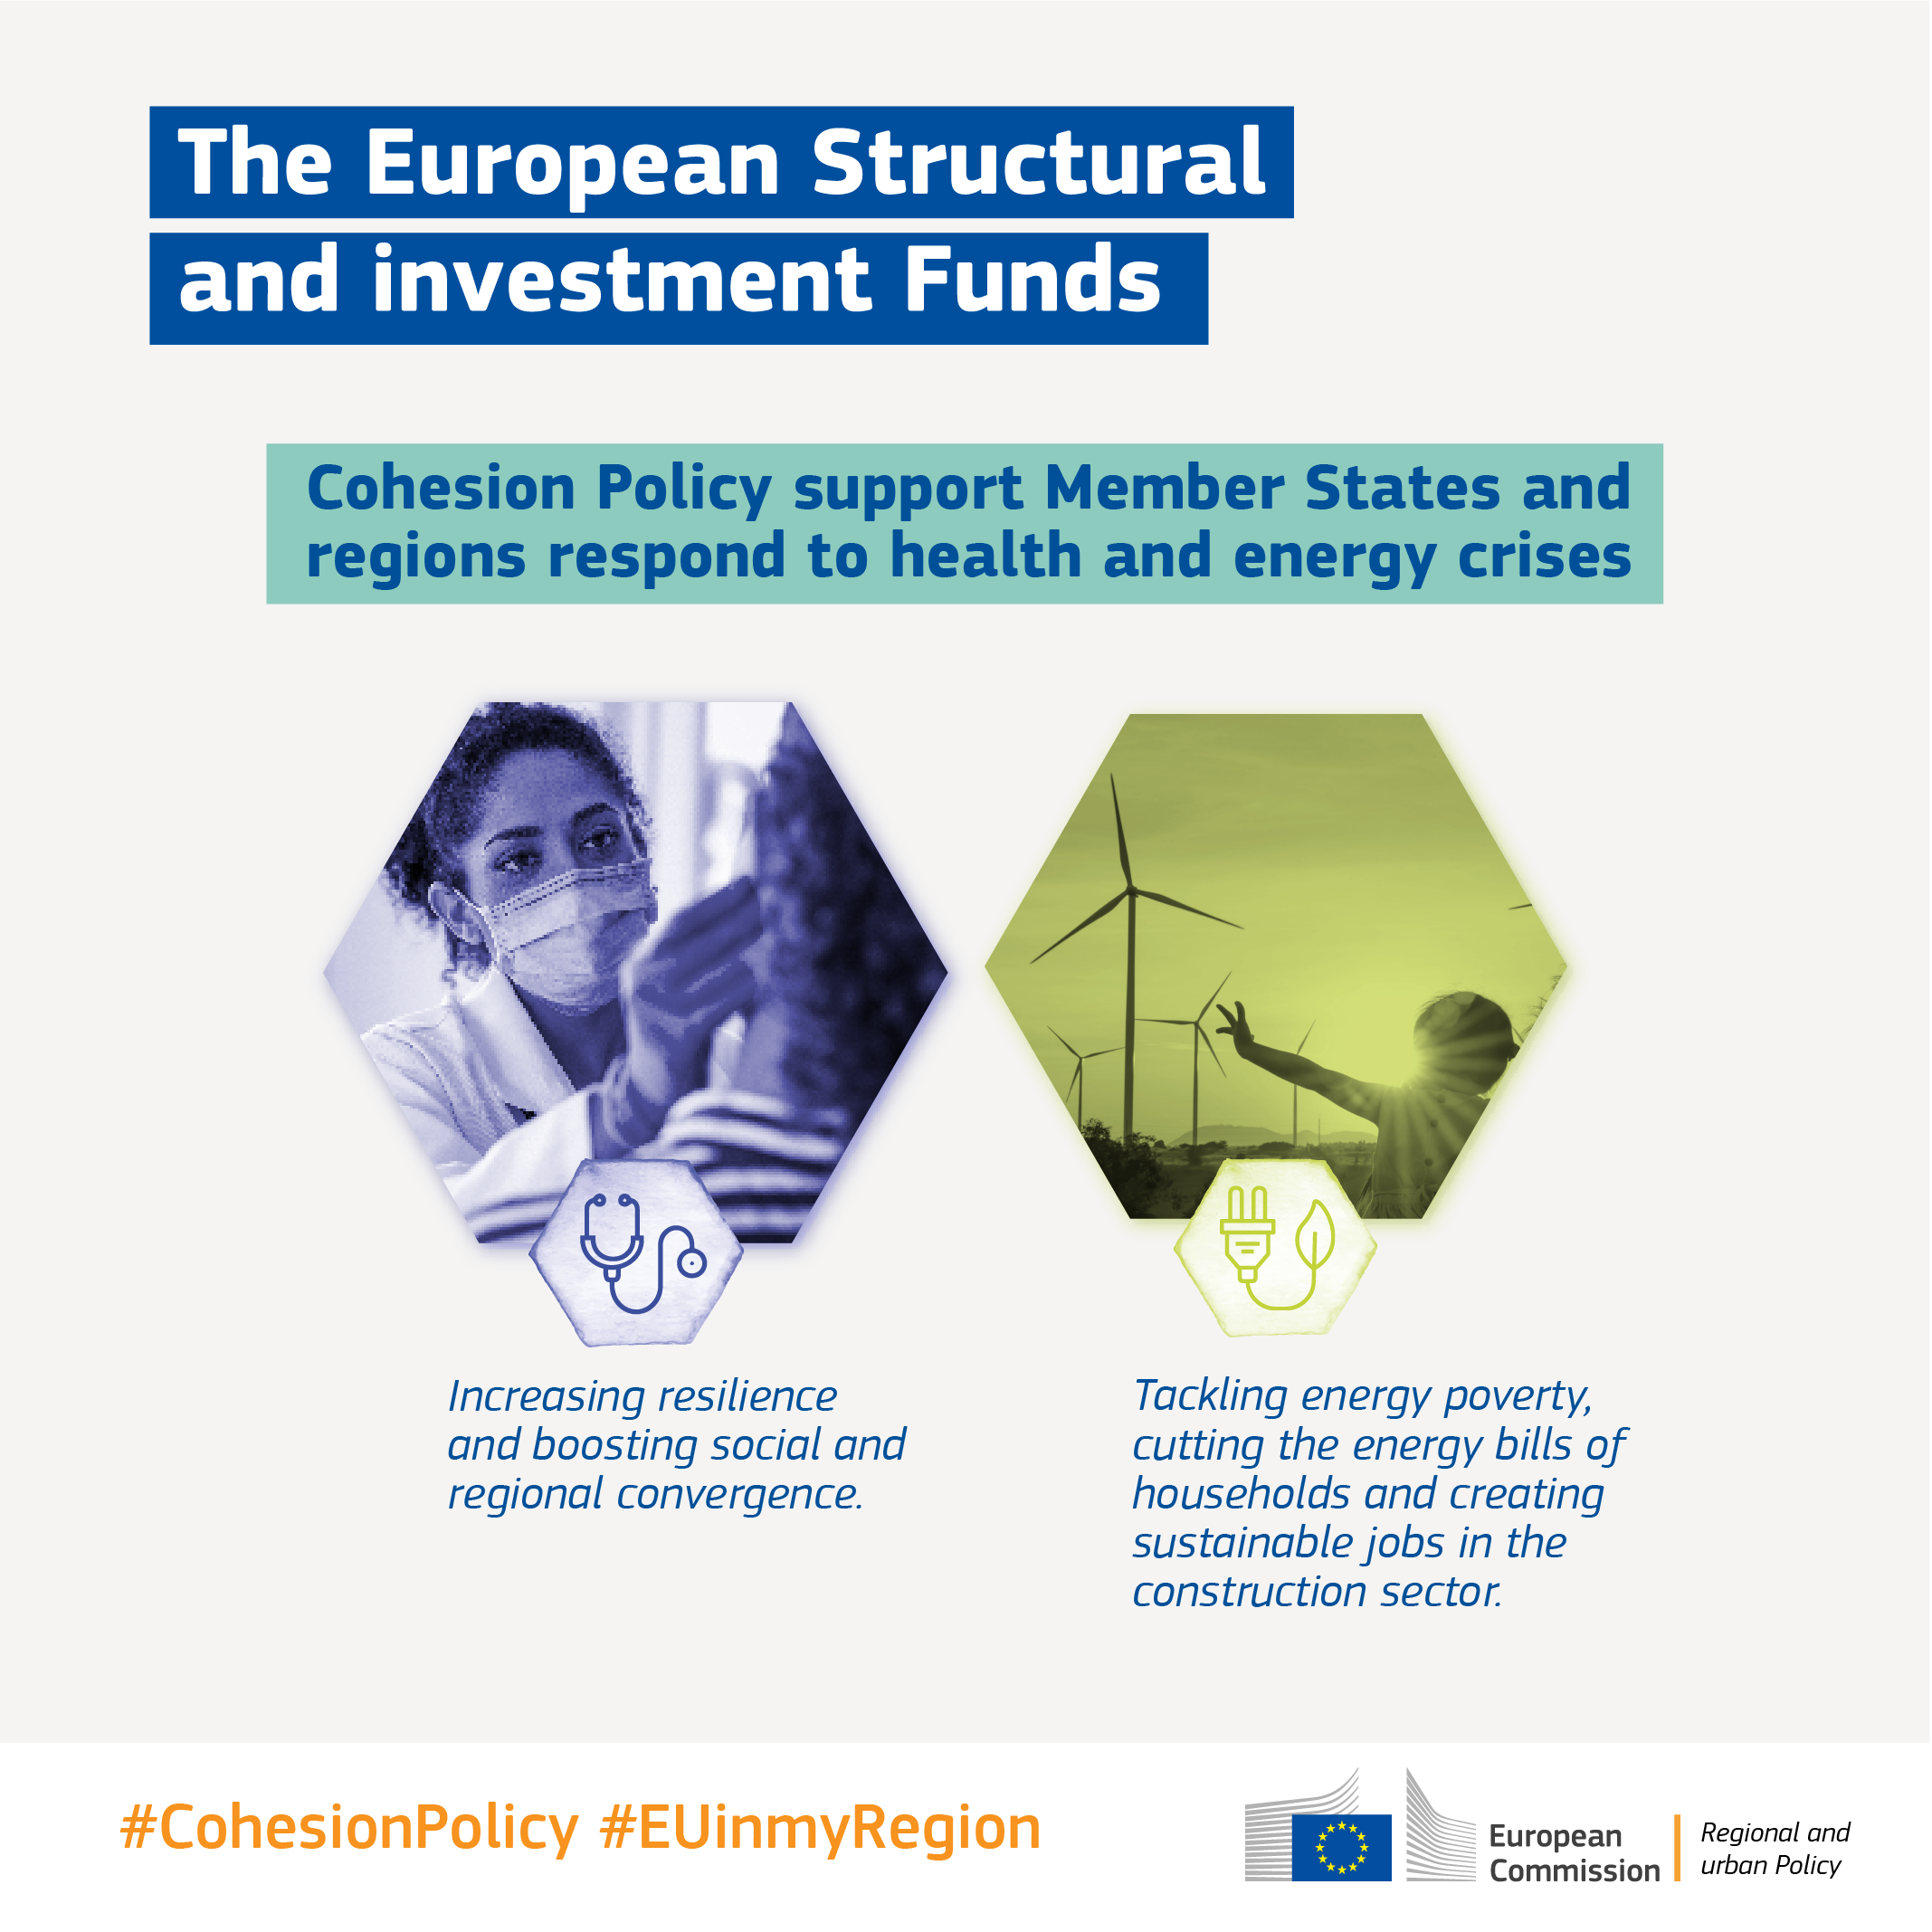 EU:s sammanhållningspolitik: Europeiska struktur- och investeringsfonderna har stöttat små och medelstora företag, miljontals människors sysselsättning och ren energiproduktion